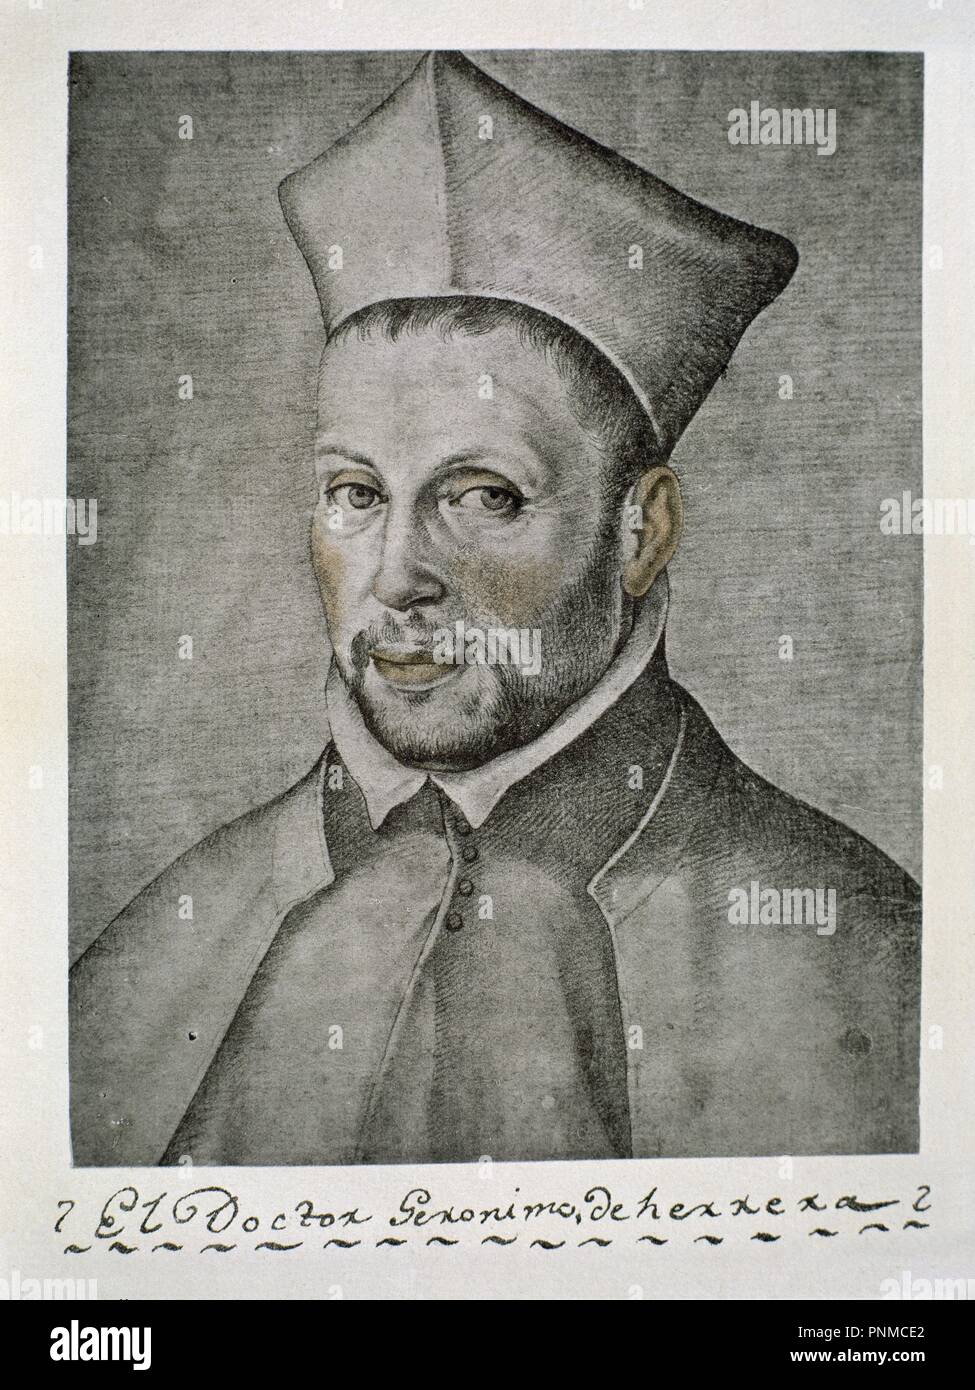 DOCTOR JERONIMO DE HERRERA - LIBRO DE RETRATOS DE ILUSTRES Y MEMORABLES VARONES - 1599. Author: PACHECO, FRANCISCO. Location: BIBLIOTECA NACIONAL-COLECCION. MADRID. SPAIN. Stock Photo